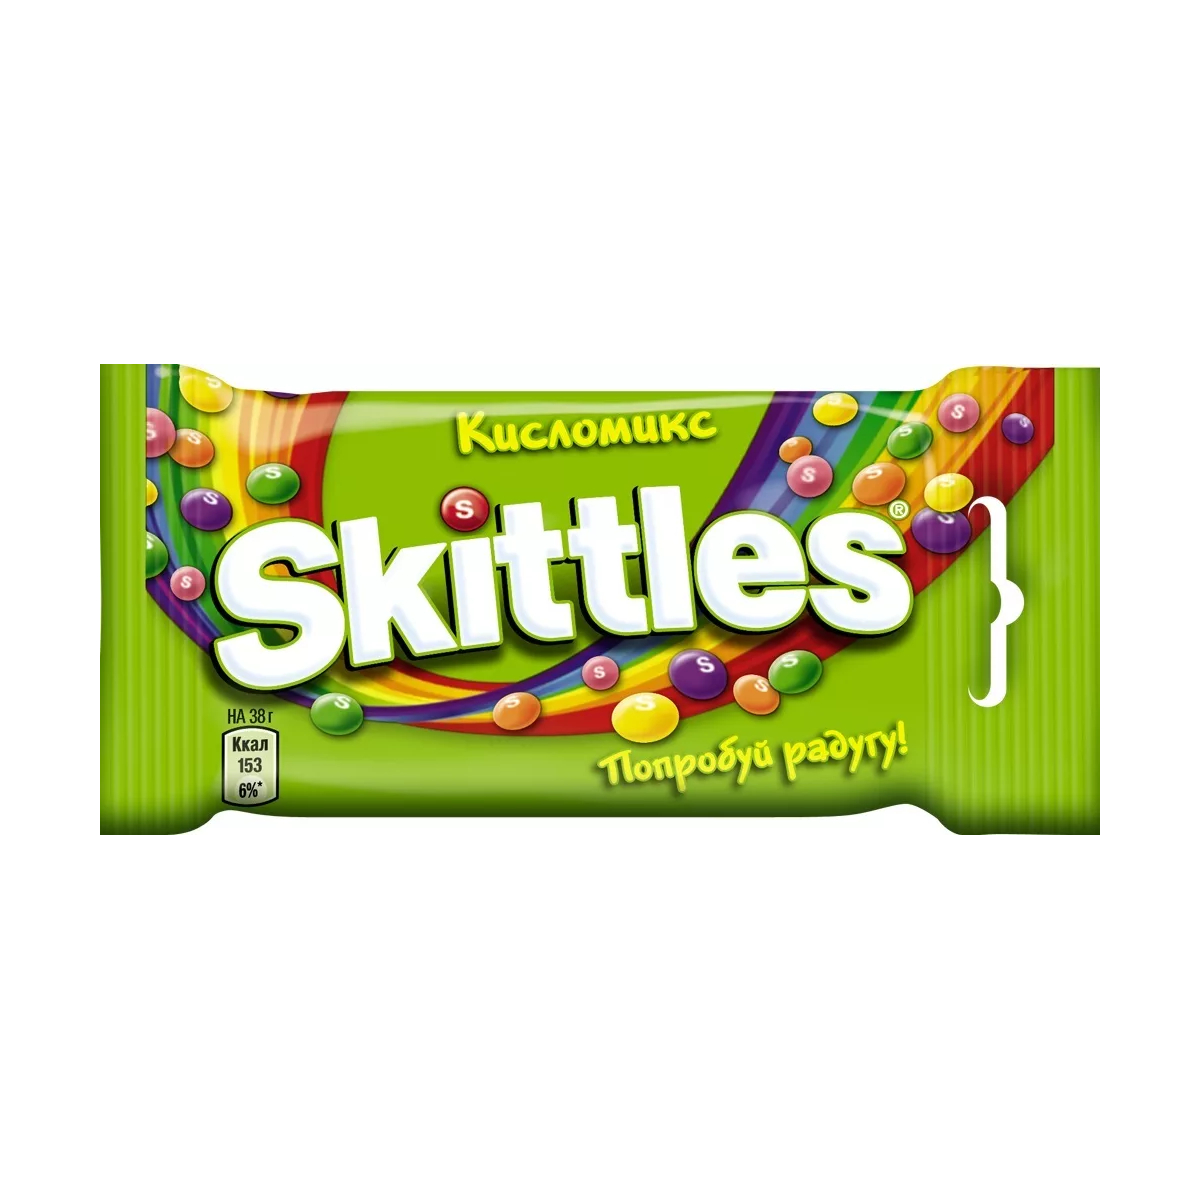 Драже Skittles Кисломикс, в разноцветной глазури, 38 г драже skittles кисломикс в разноцветной глазури 38 г